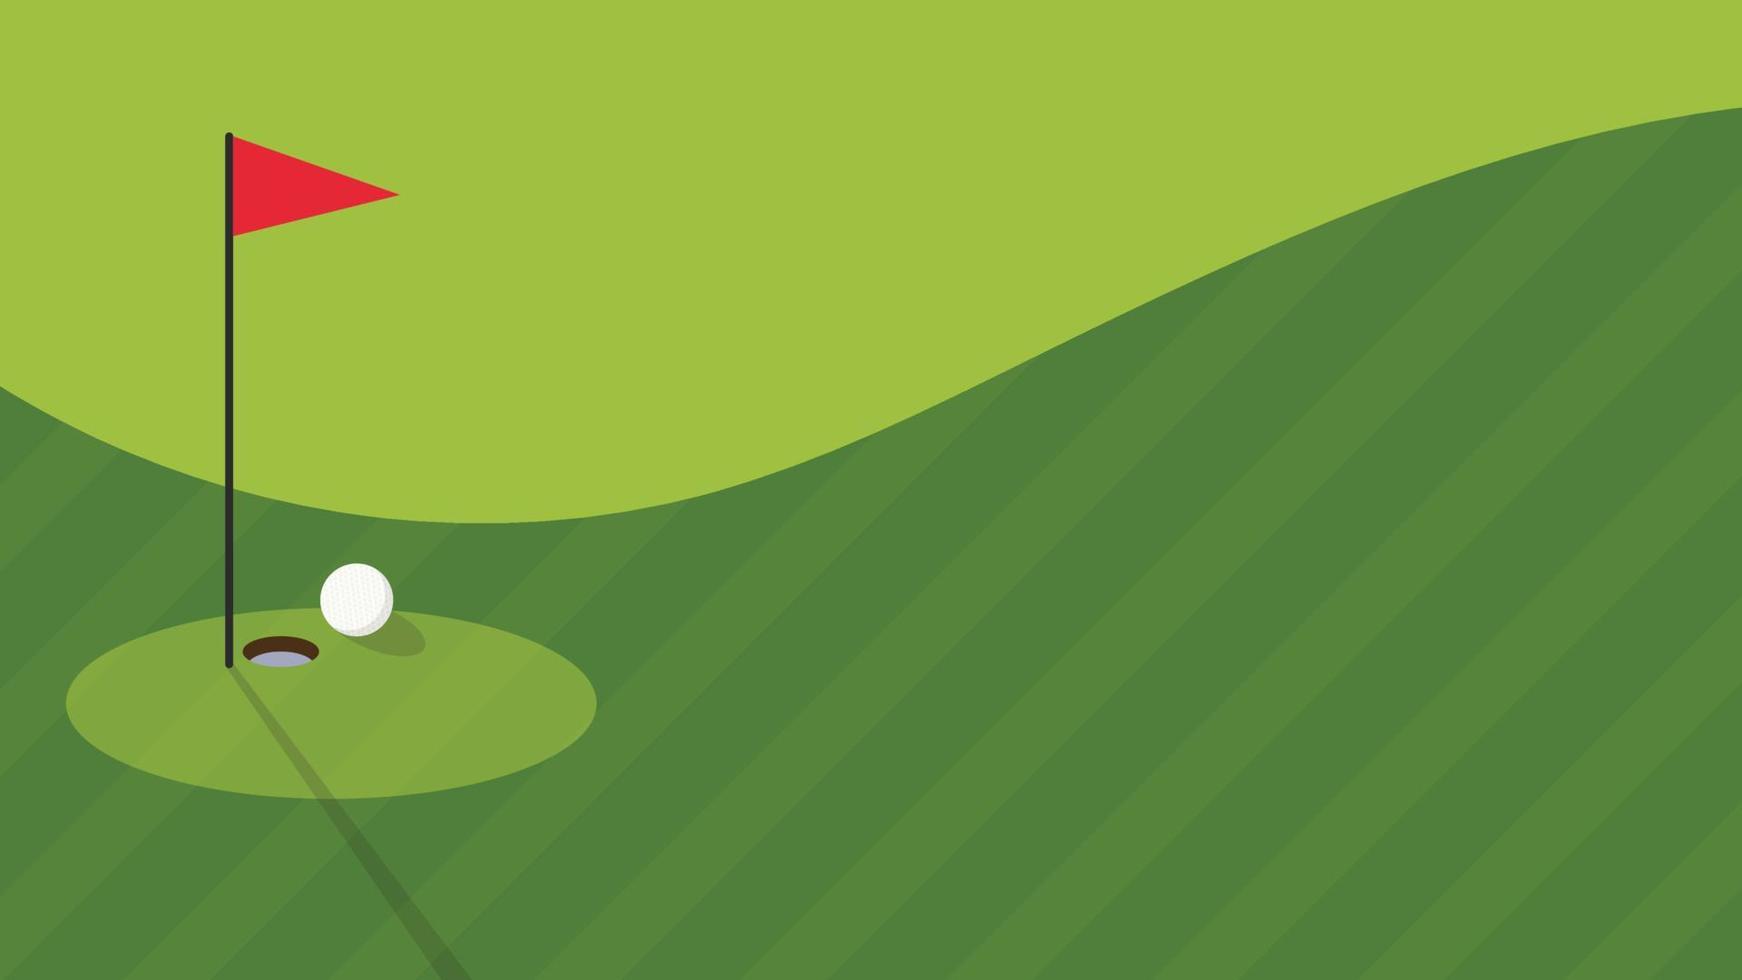 design de cartaz de golfe. vetor de golfe. fundo. espaço livre para texto. copie o espaço.